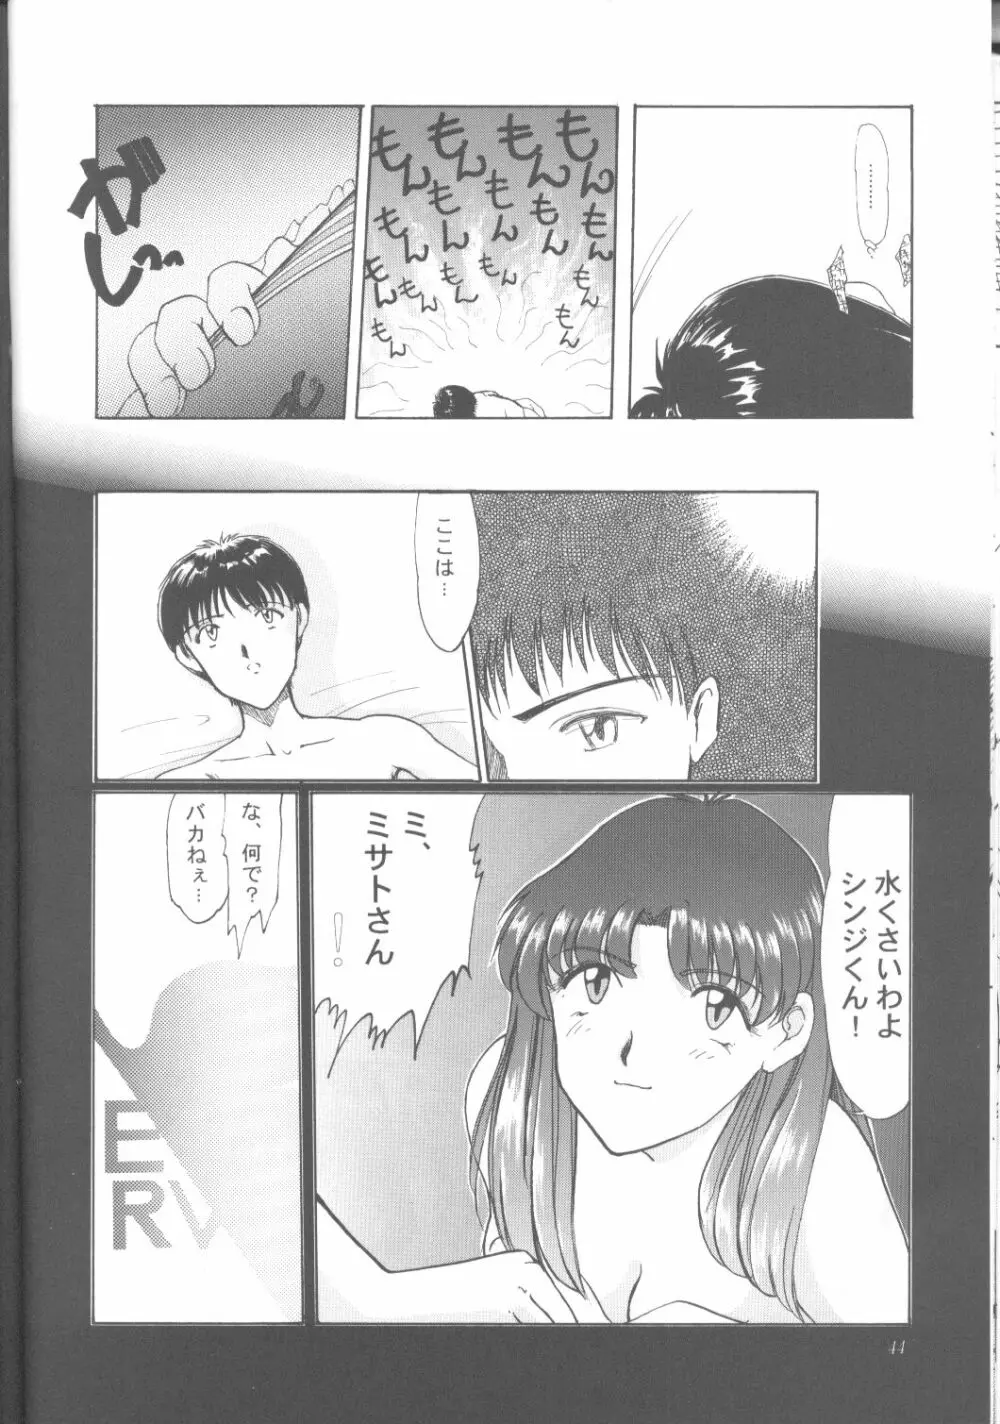 綾波零式 Ayanami Zero Spec 43ページ